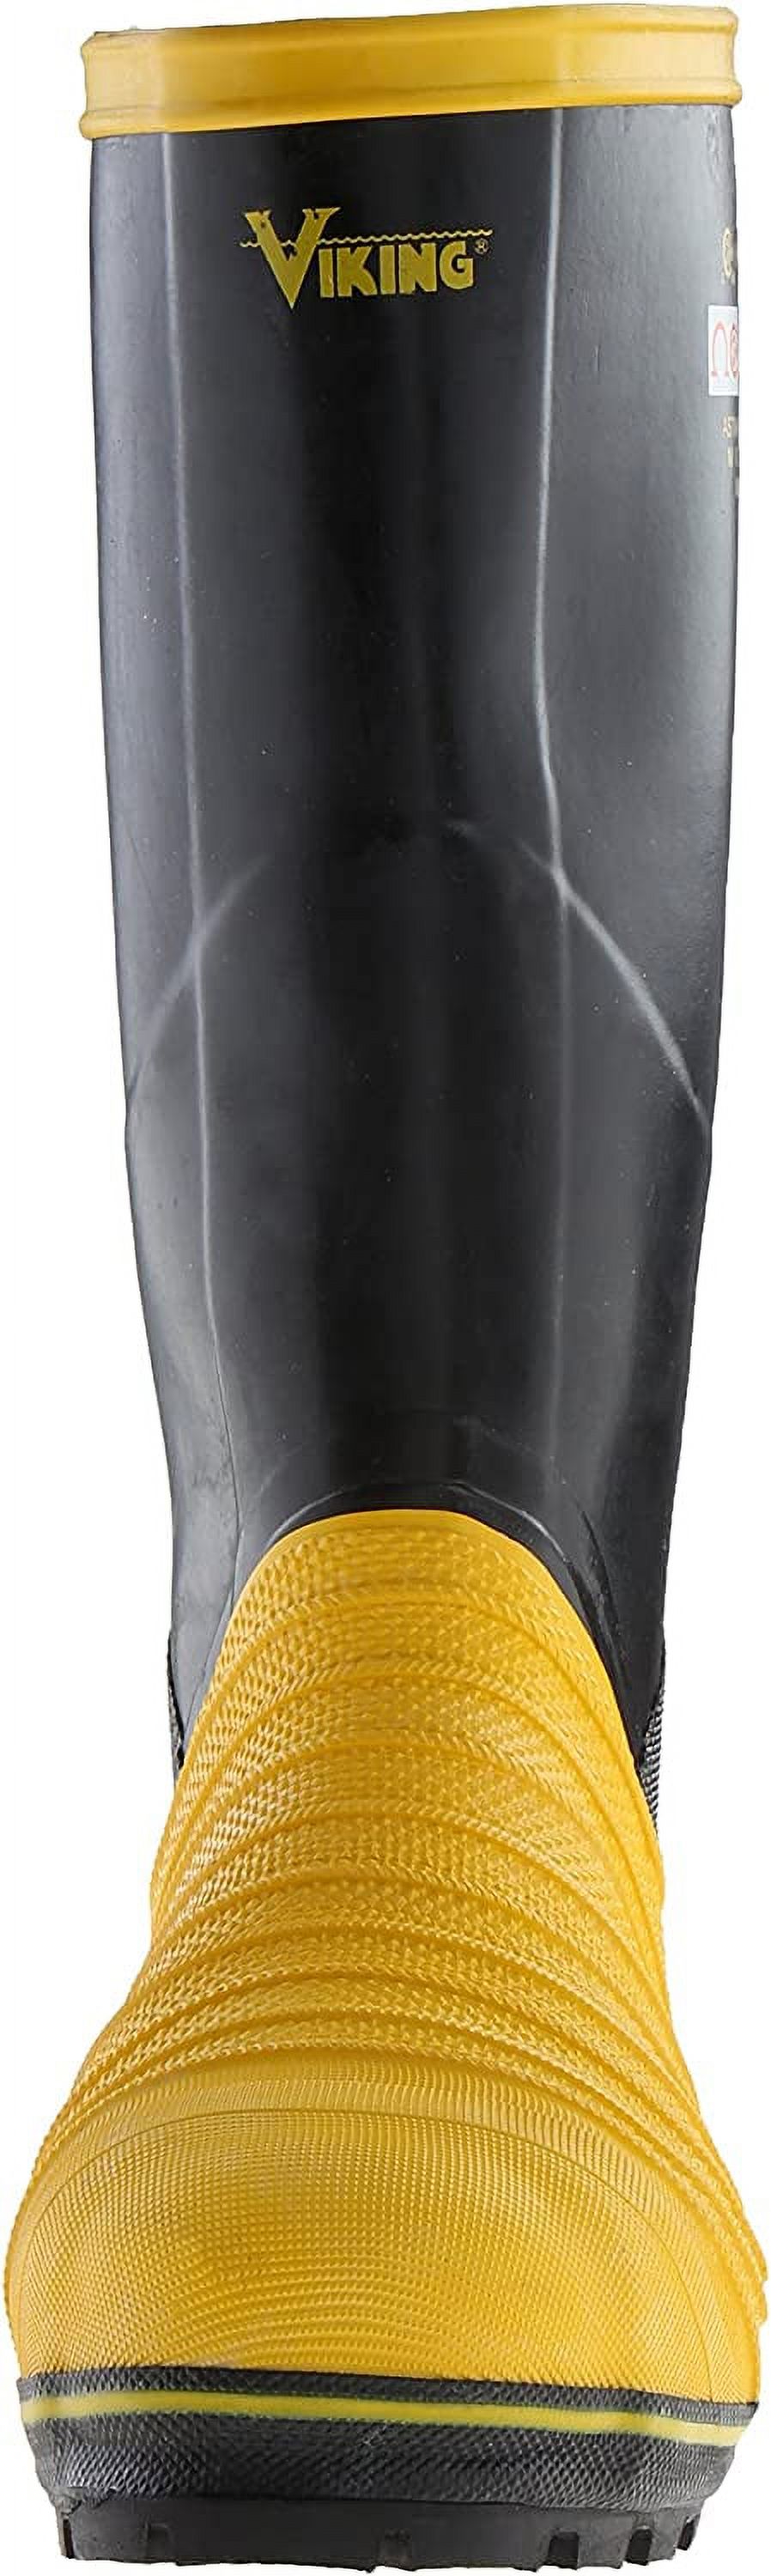 Viking Men's Miner 49er Tall Metatarsal Protection Boot - image 2 of 8